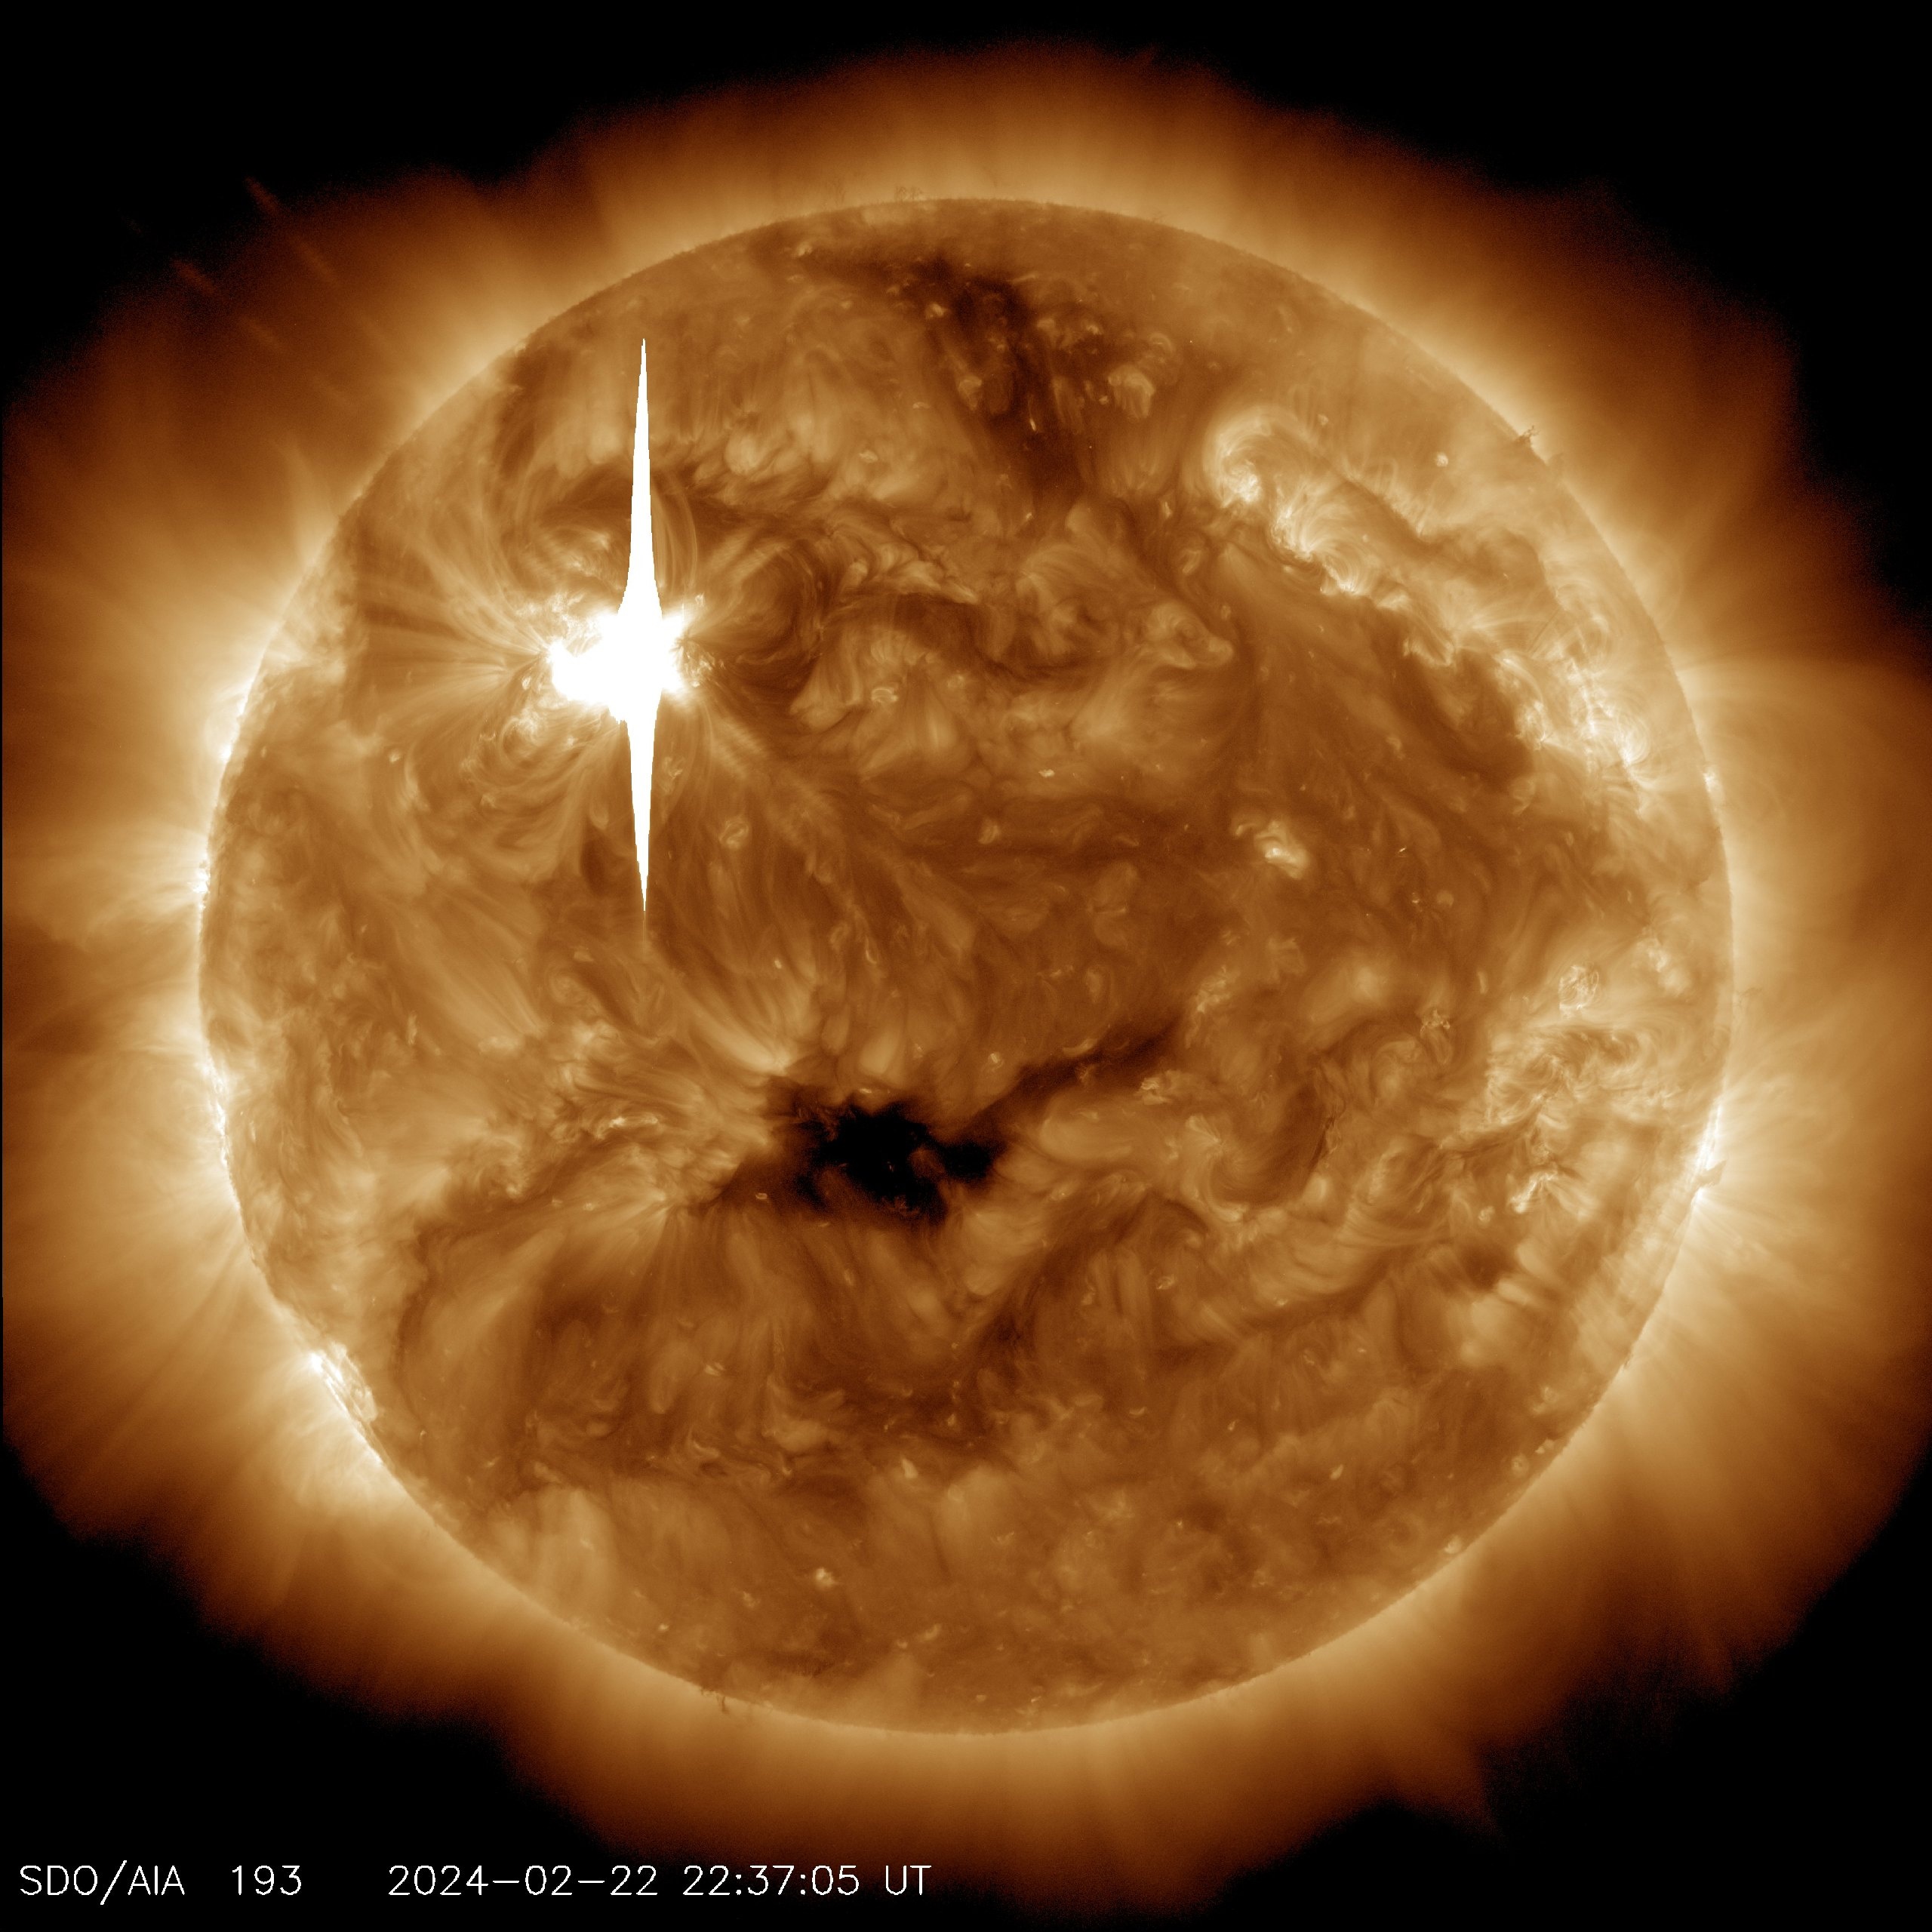 Најјача експлозија на Сунцу у овој години